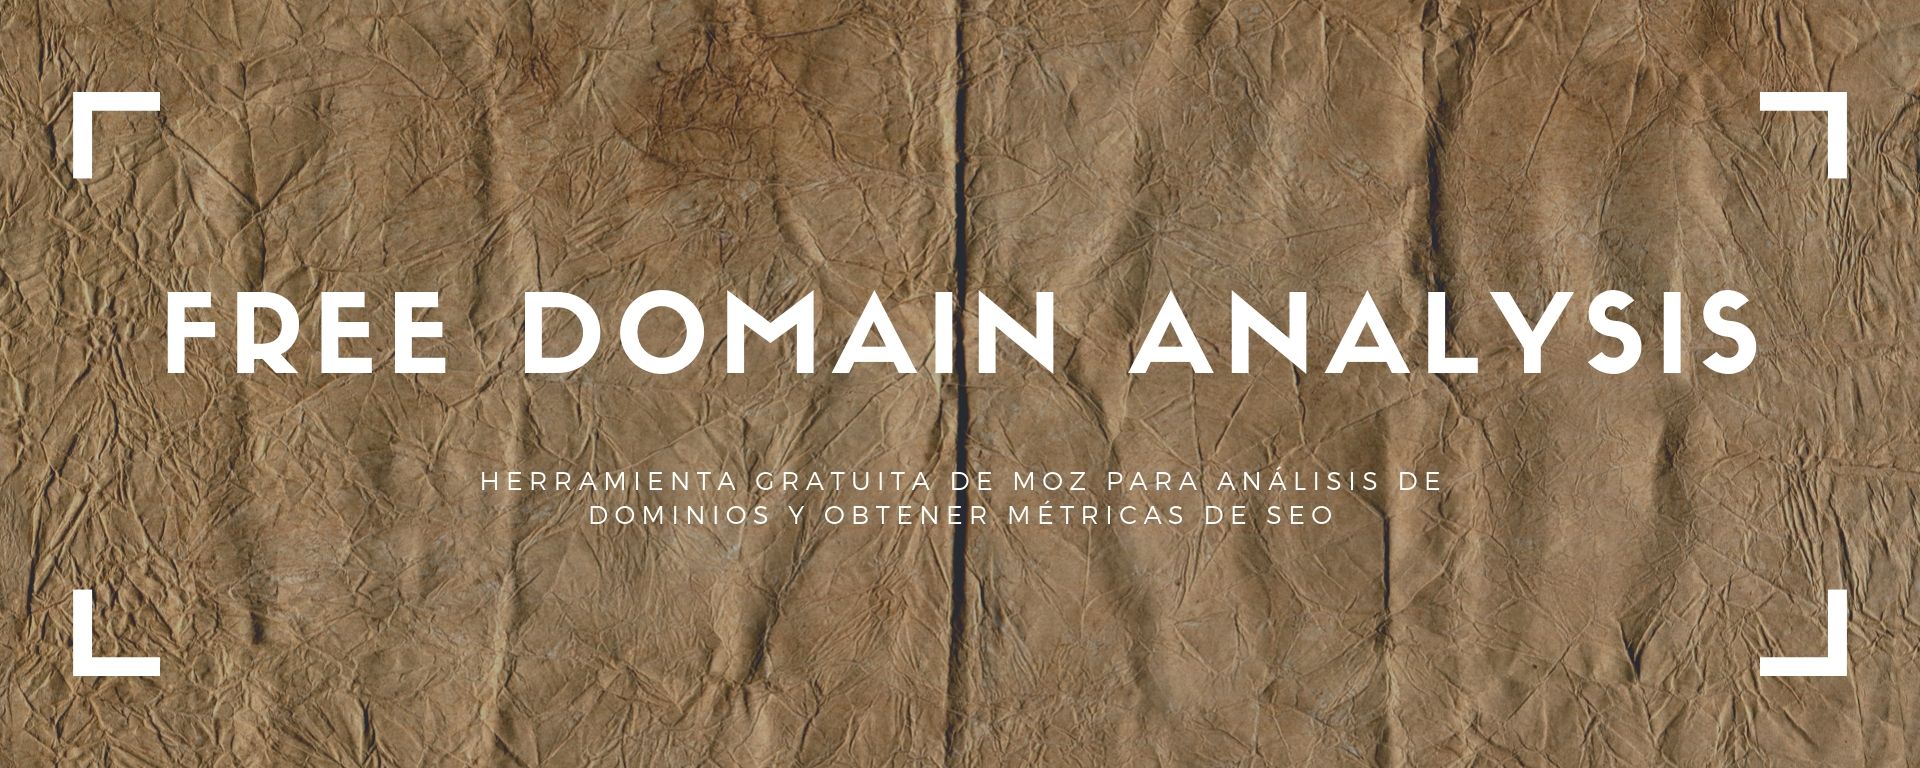 free domain analysis de Moz